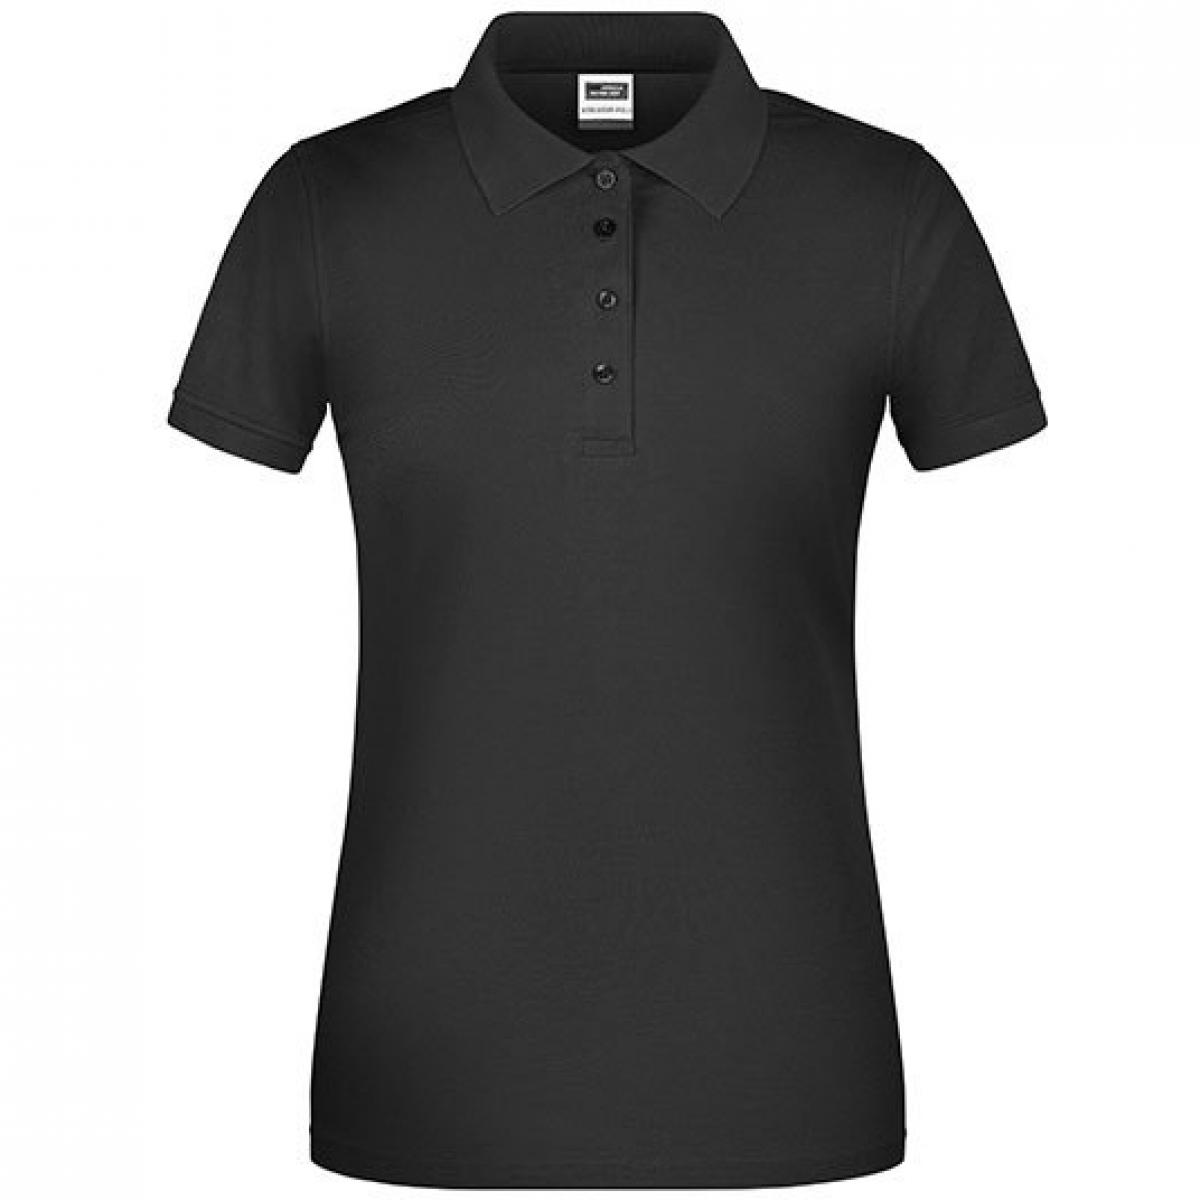 Hersteller: James+Nicholson Herstellernummer: JN873 Artikelbezeichnung: Damen Bio Workwear Polo, Waschbar bis 60 °C Farbe: Black